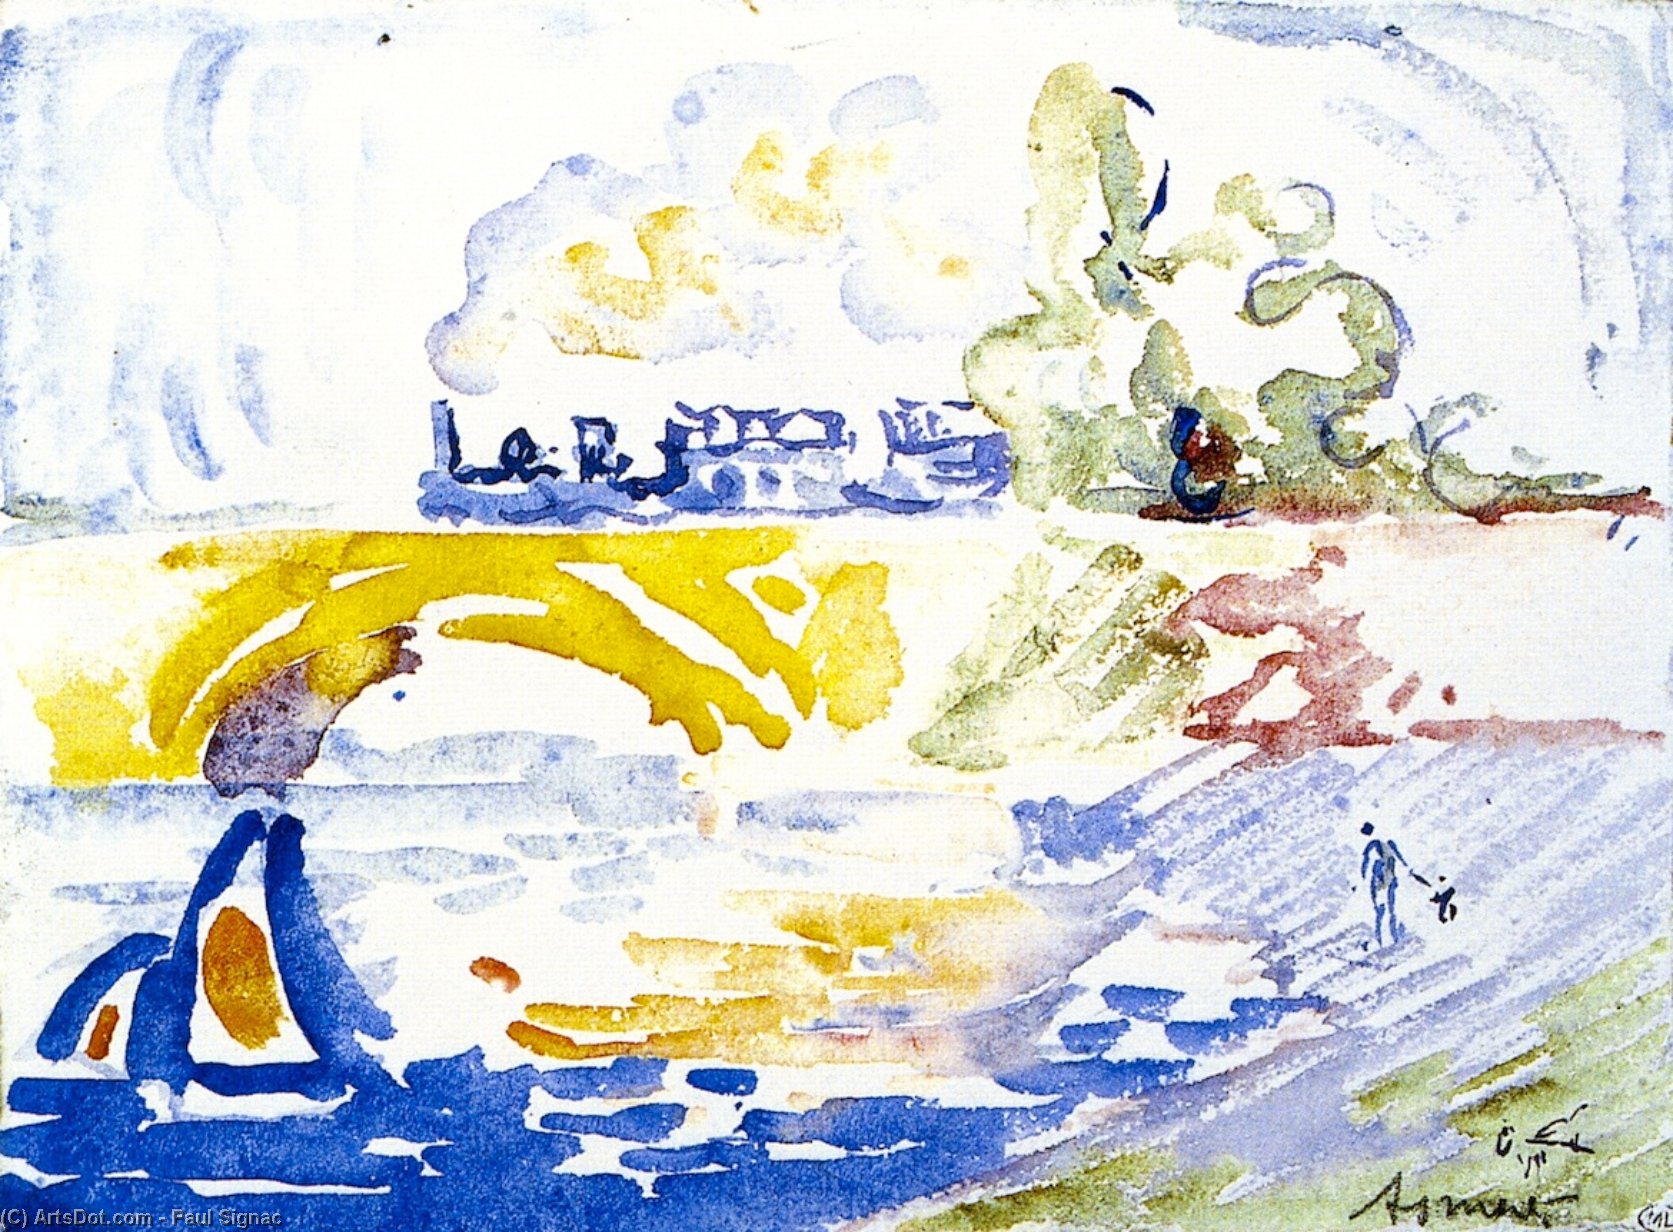 WikiOO.org - Εγκυκλοπαίδεια Καλών Τεχνών - Ζωγραφική, έργα τέχνης Paul Signac - The Viaduct, Asnieres